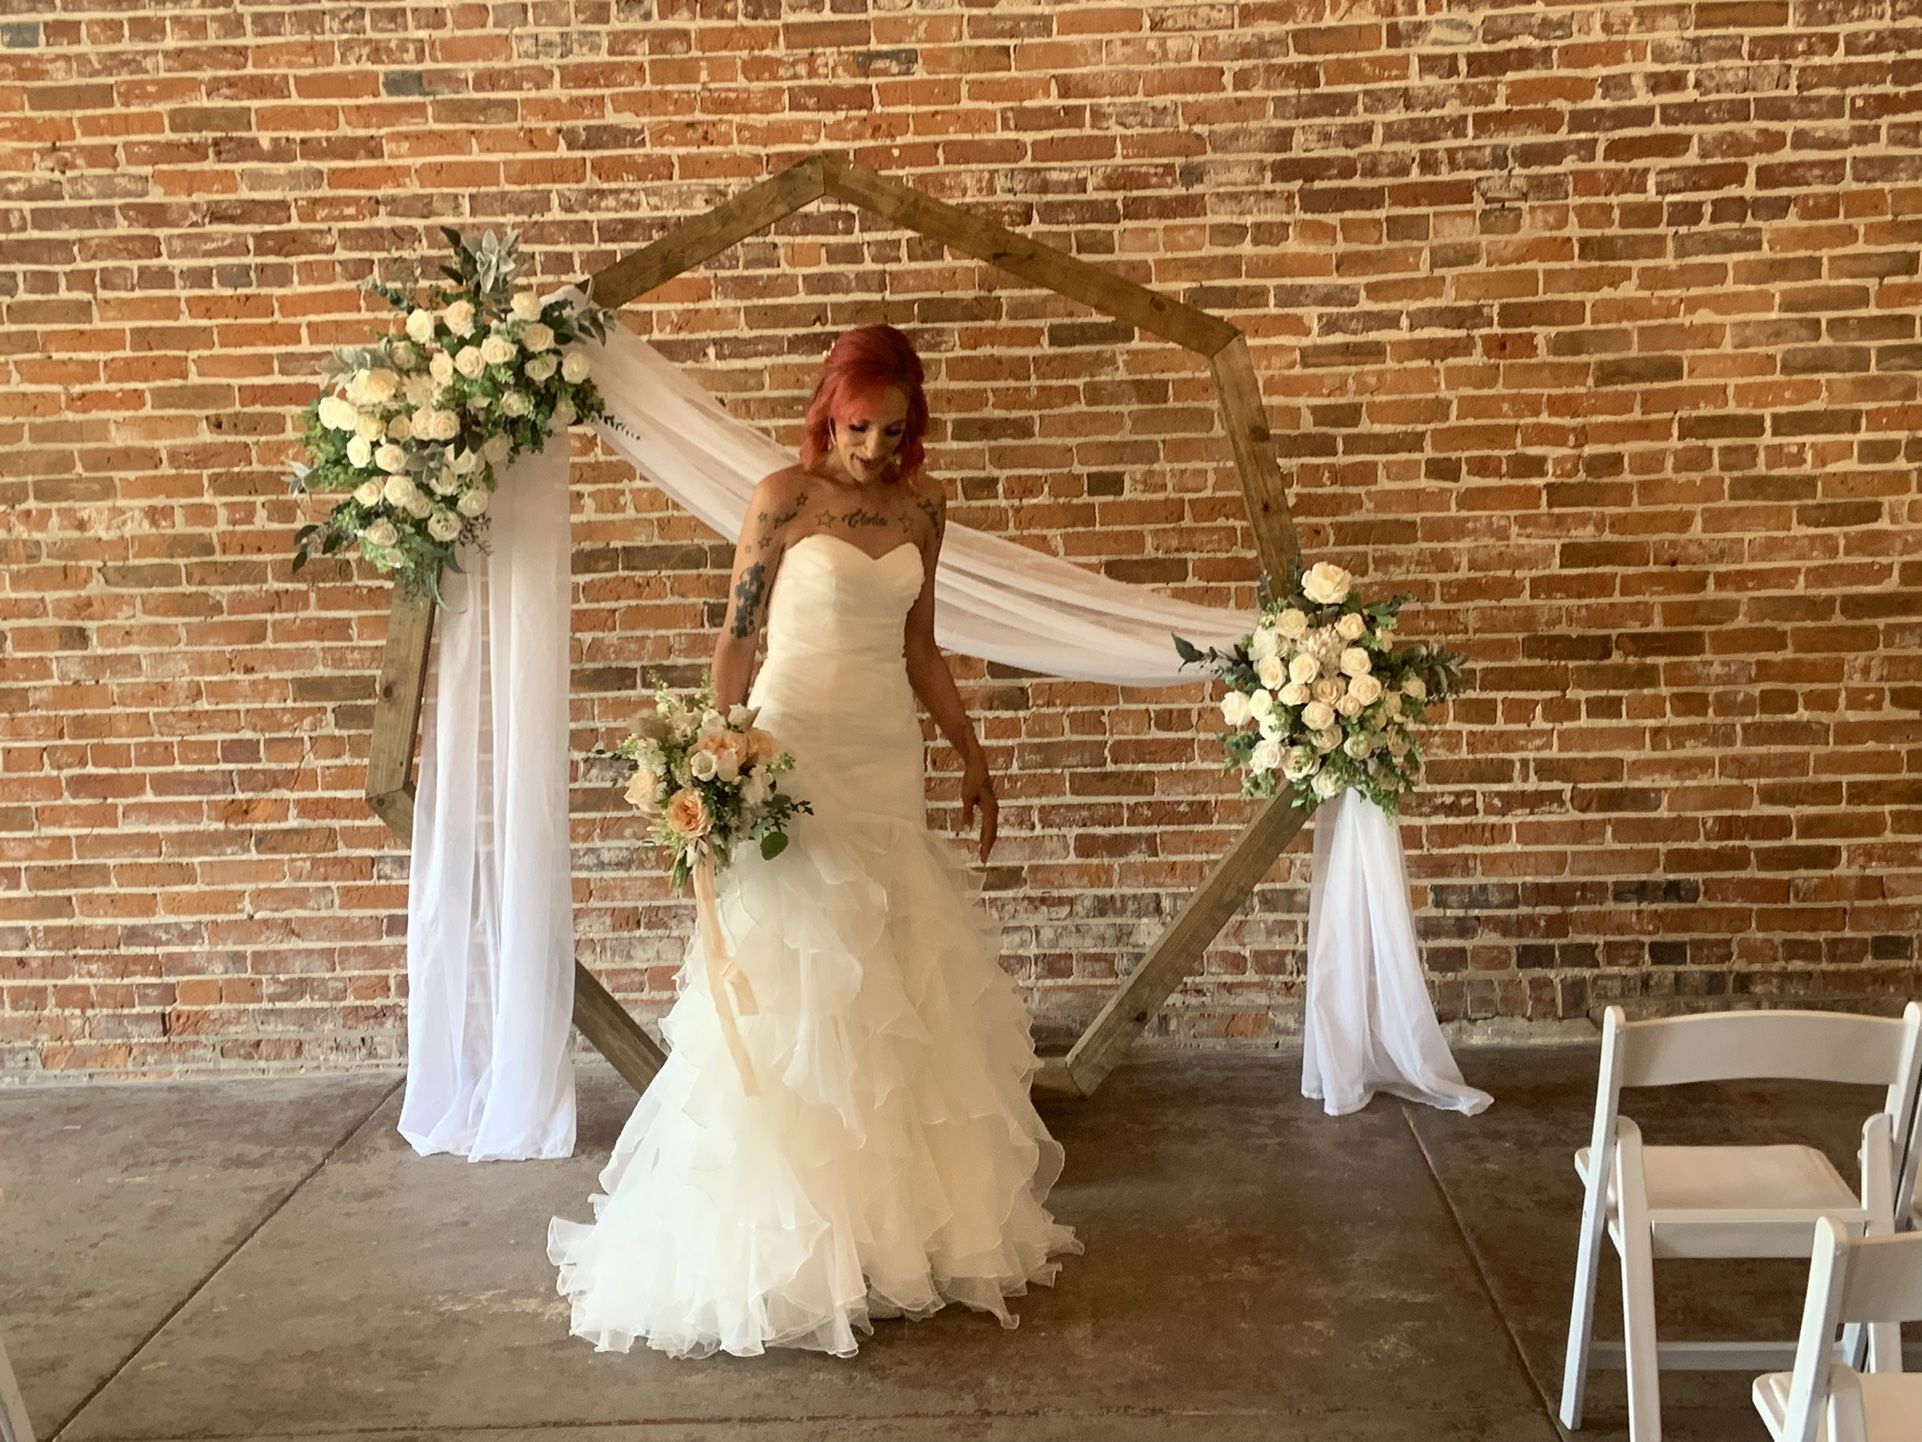 David bridals Wedding Dress 